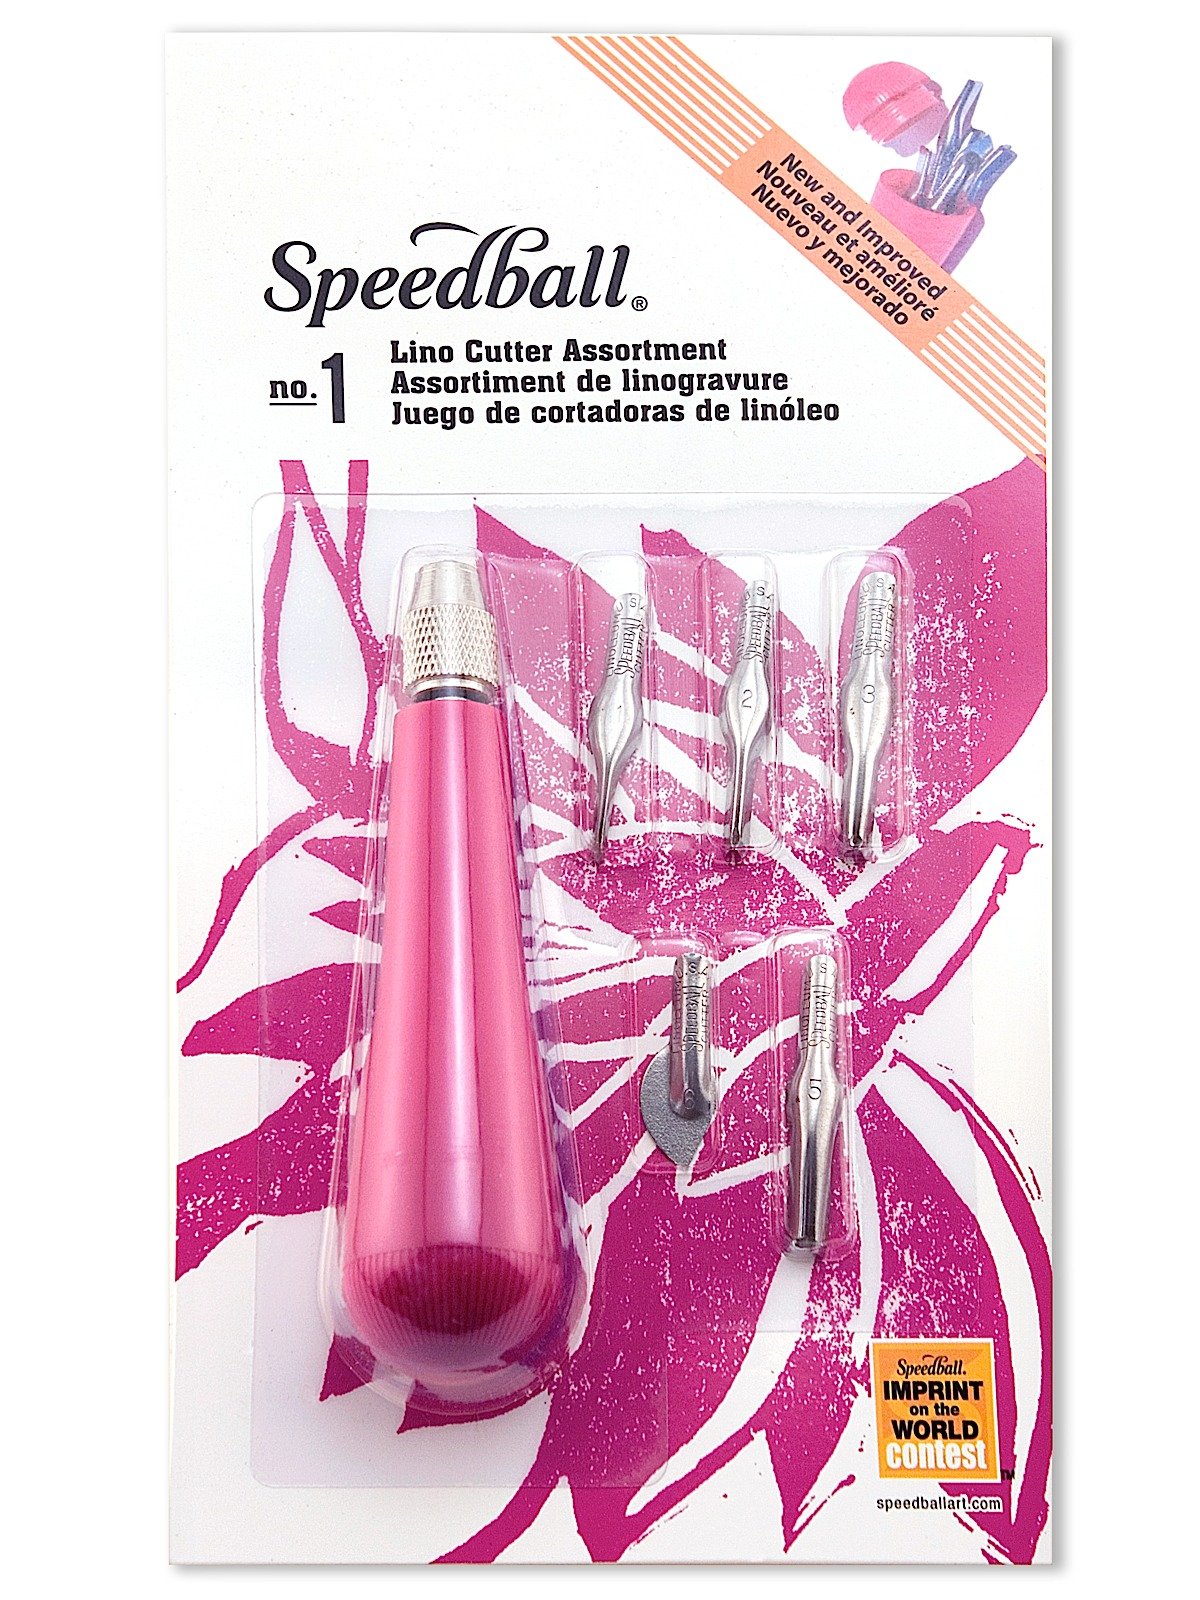 Speedball Lino Cutter Assortments